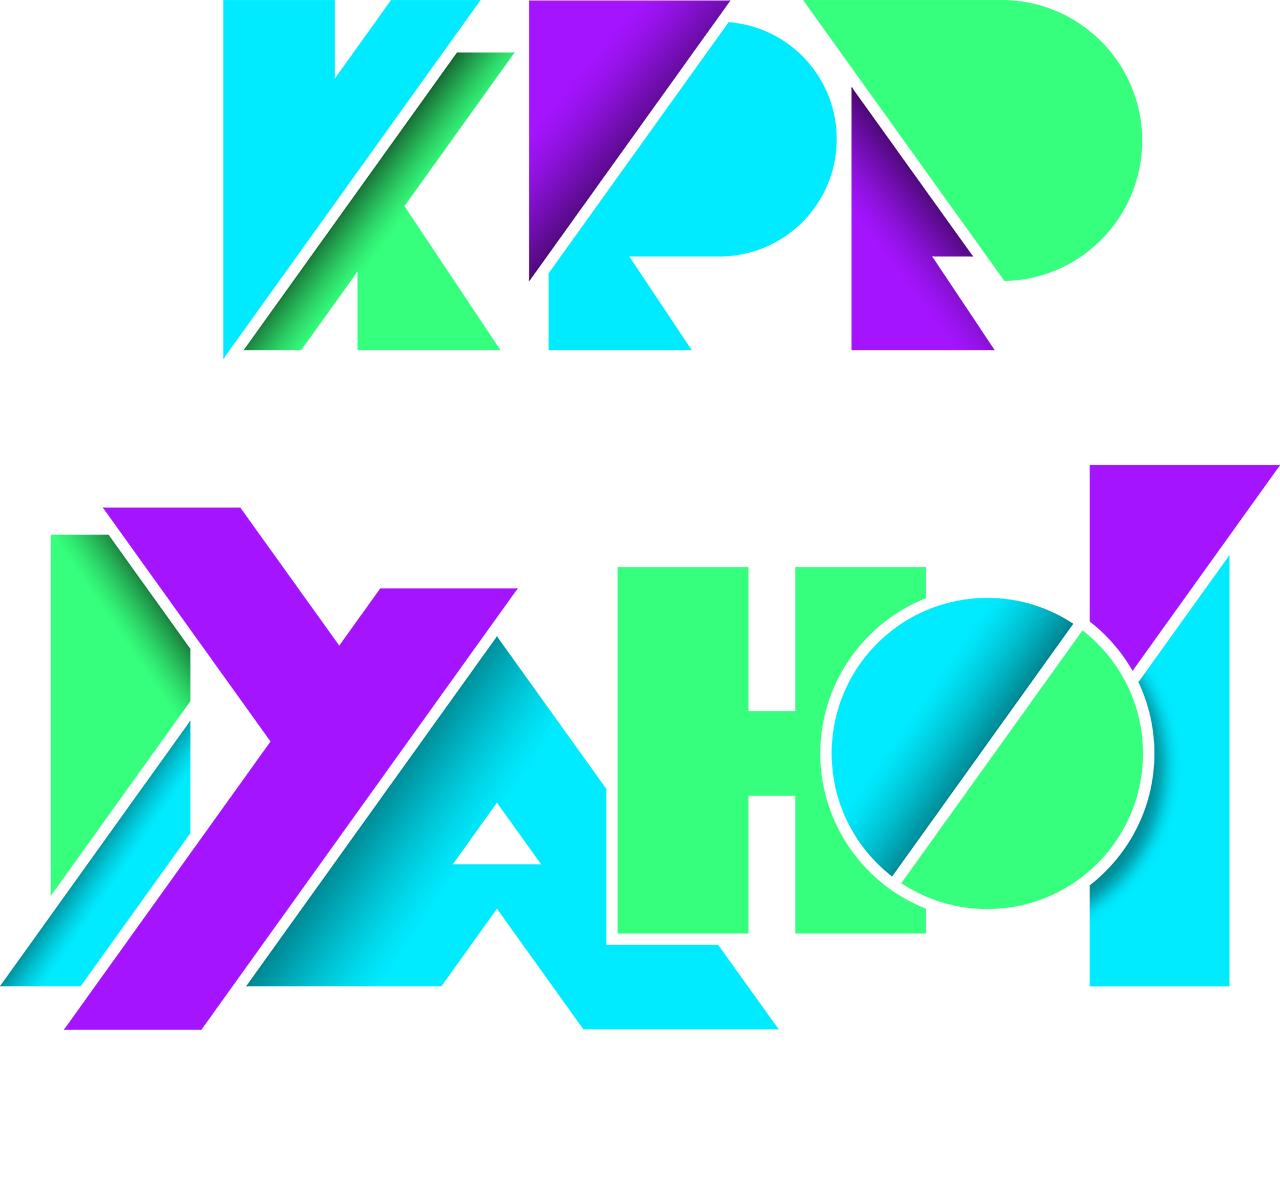 KPP JAPAN IYAHOI TOUR 2017